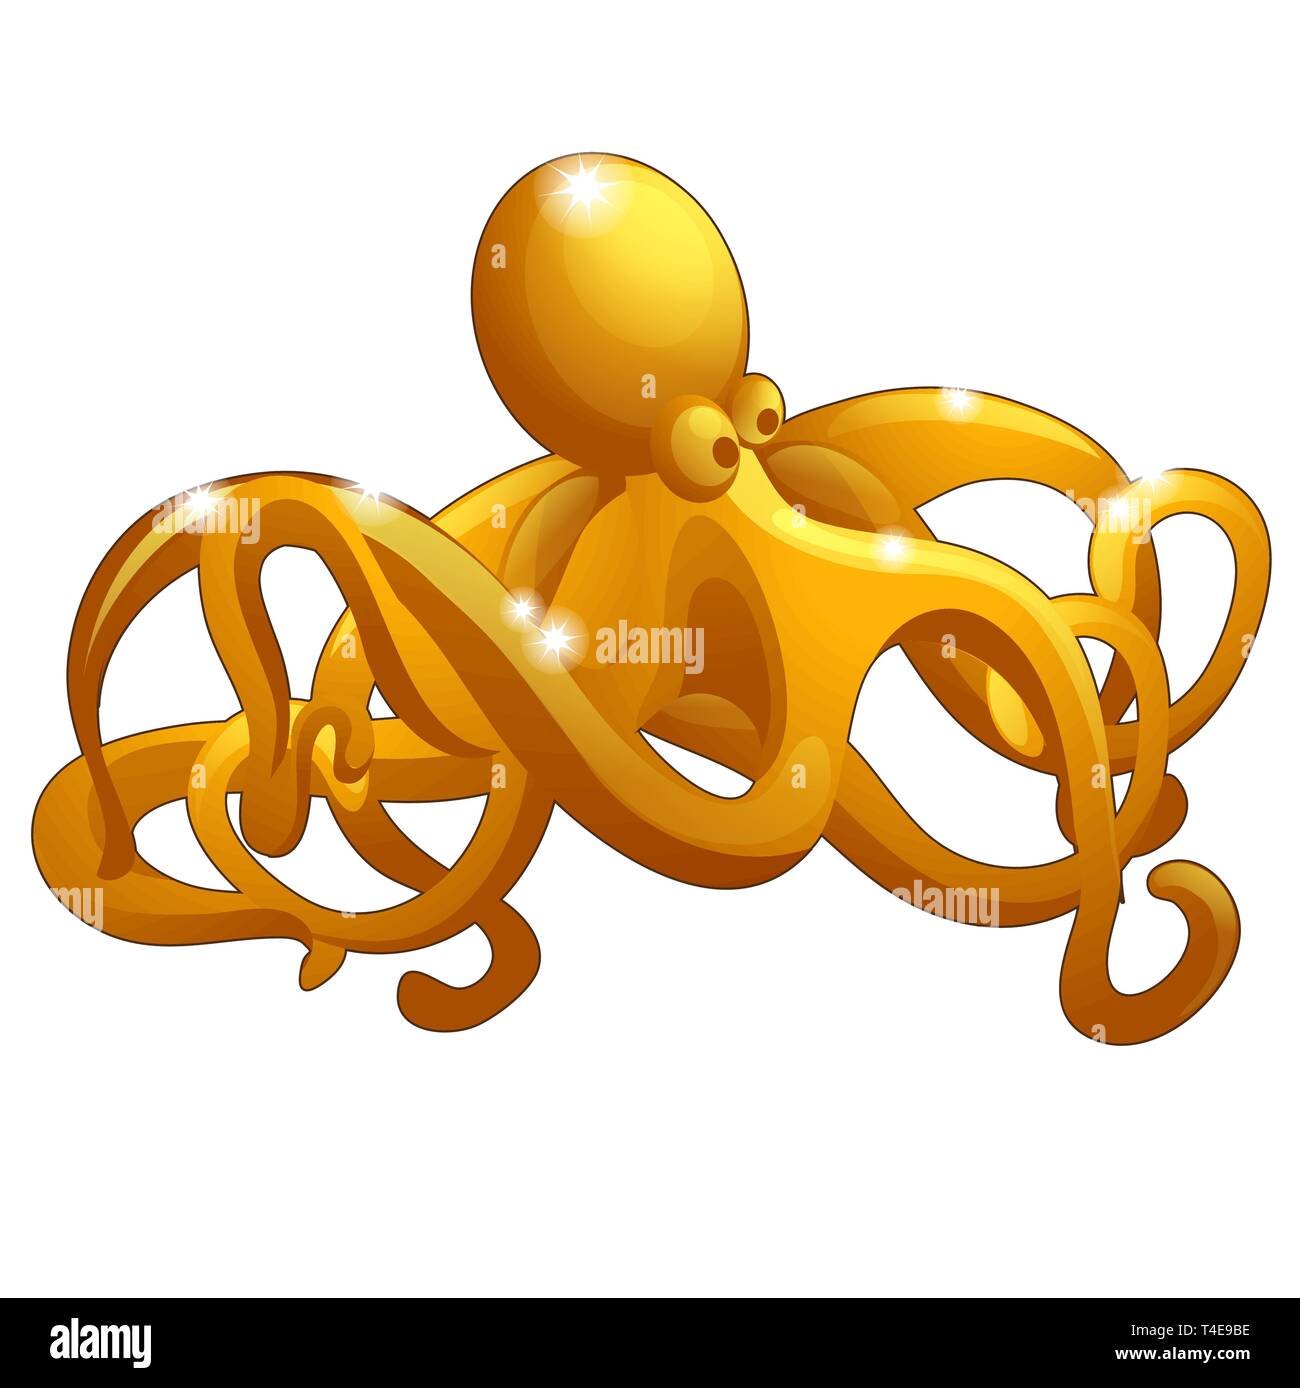 Die Figur des Octopus aus Gold auf weißem Hintergrund. Vektor cartoon Close-up Abbildung. Stock Vektor